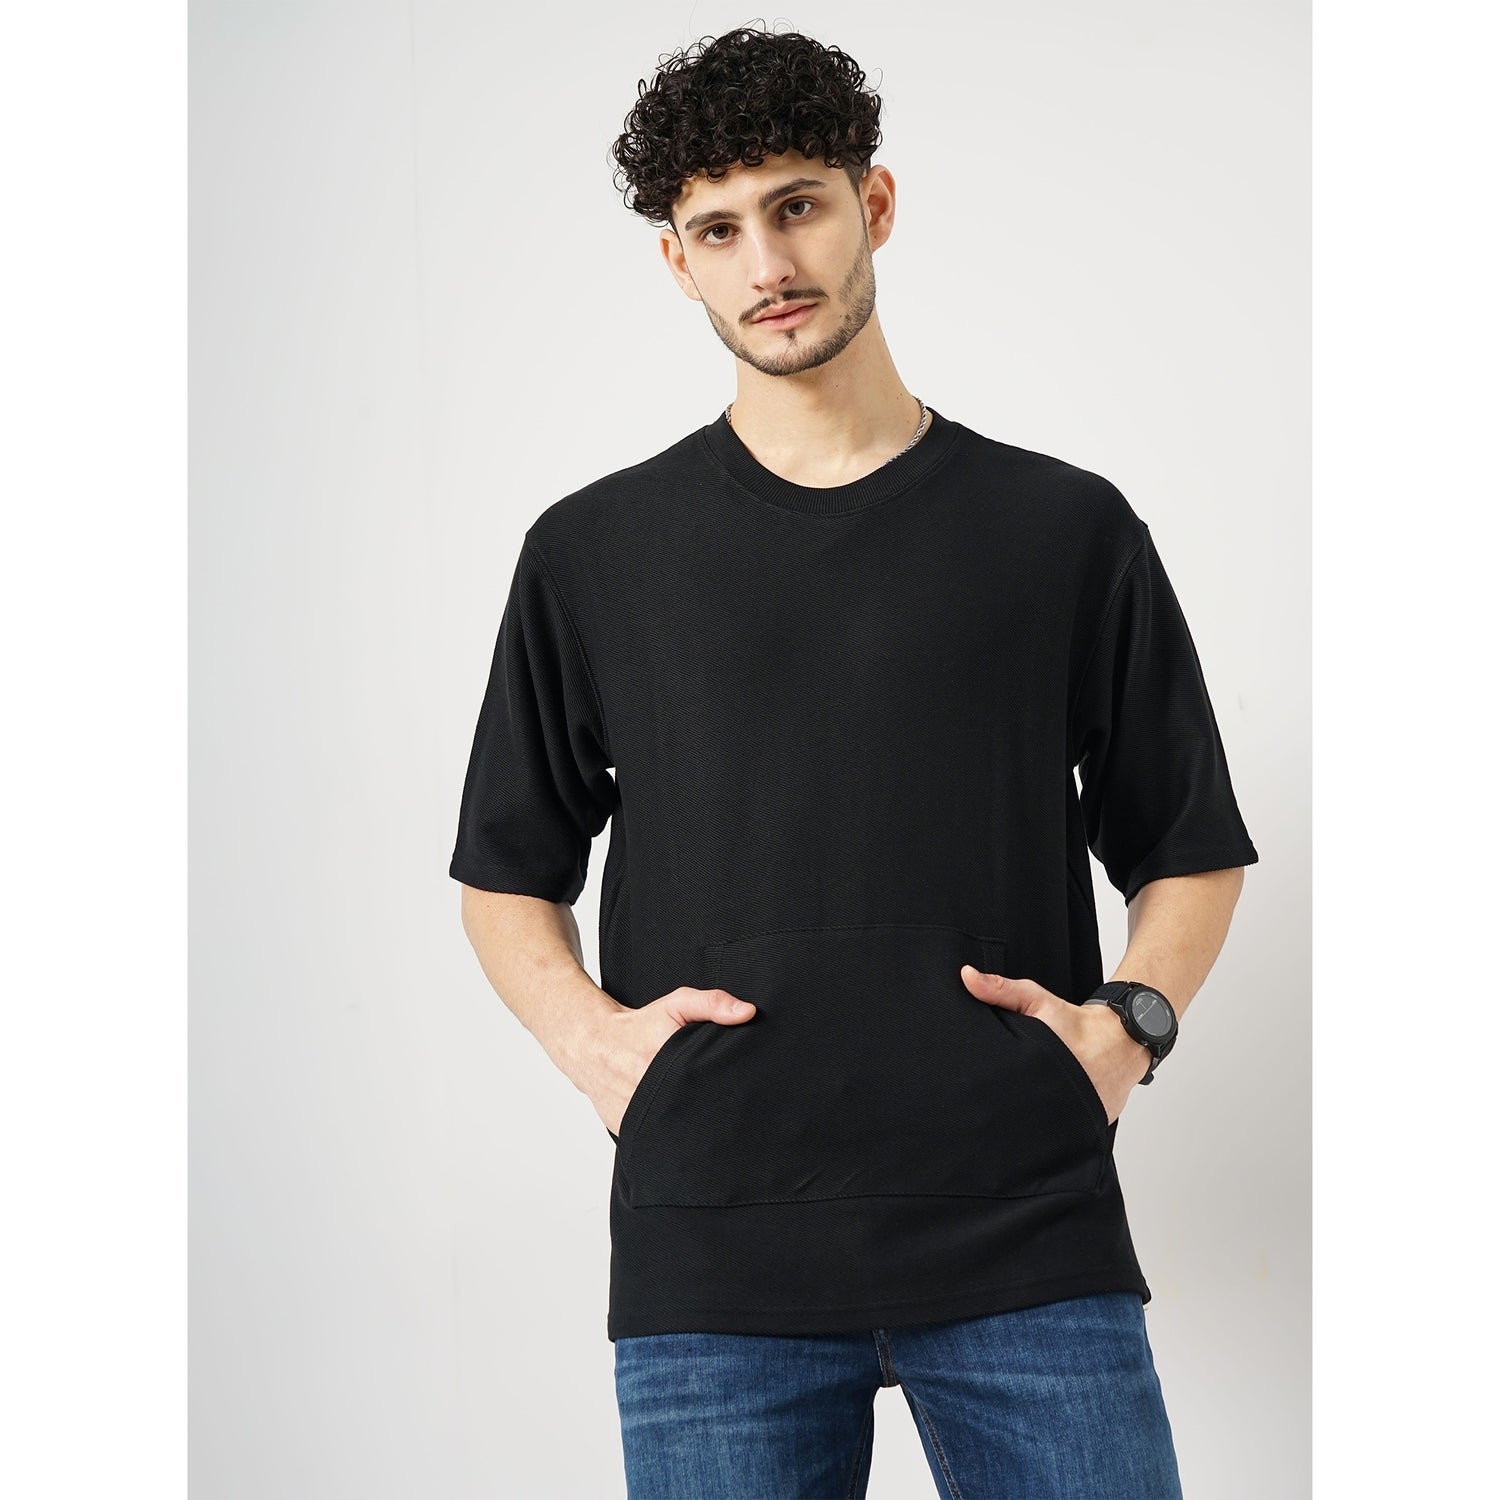 Solid Black Half Round Neck Structured Tshirt (FEKANGIN